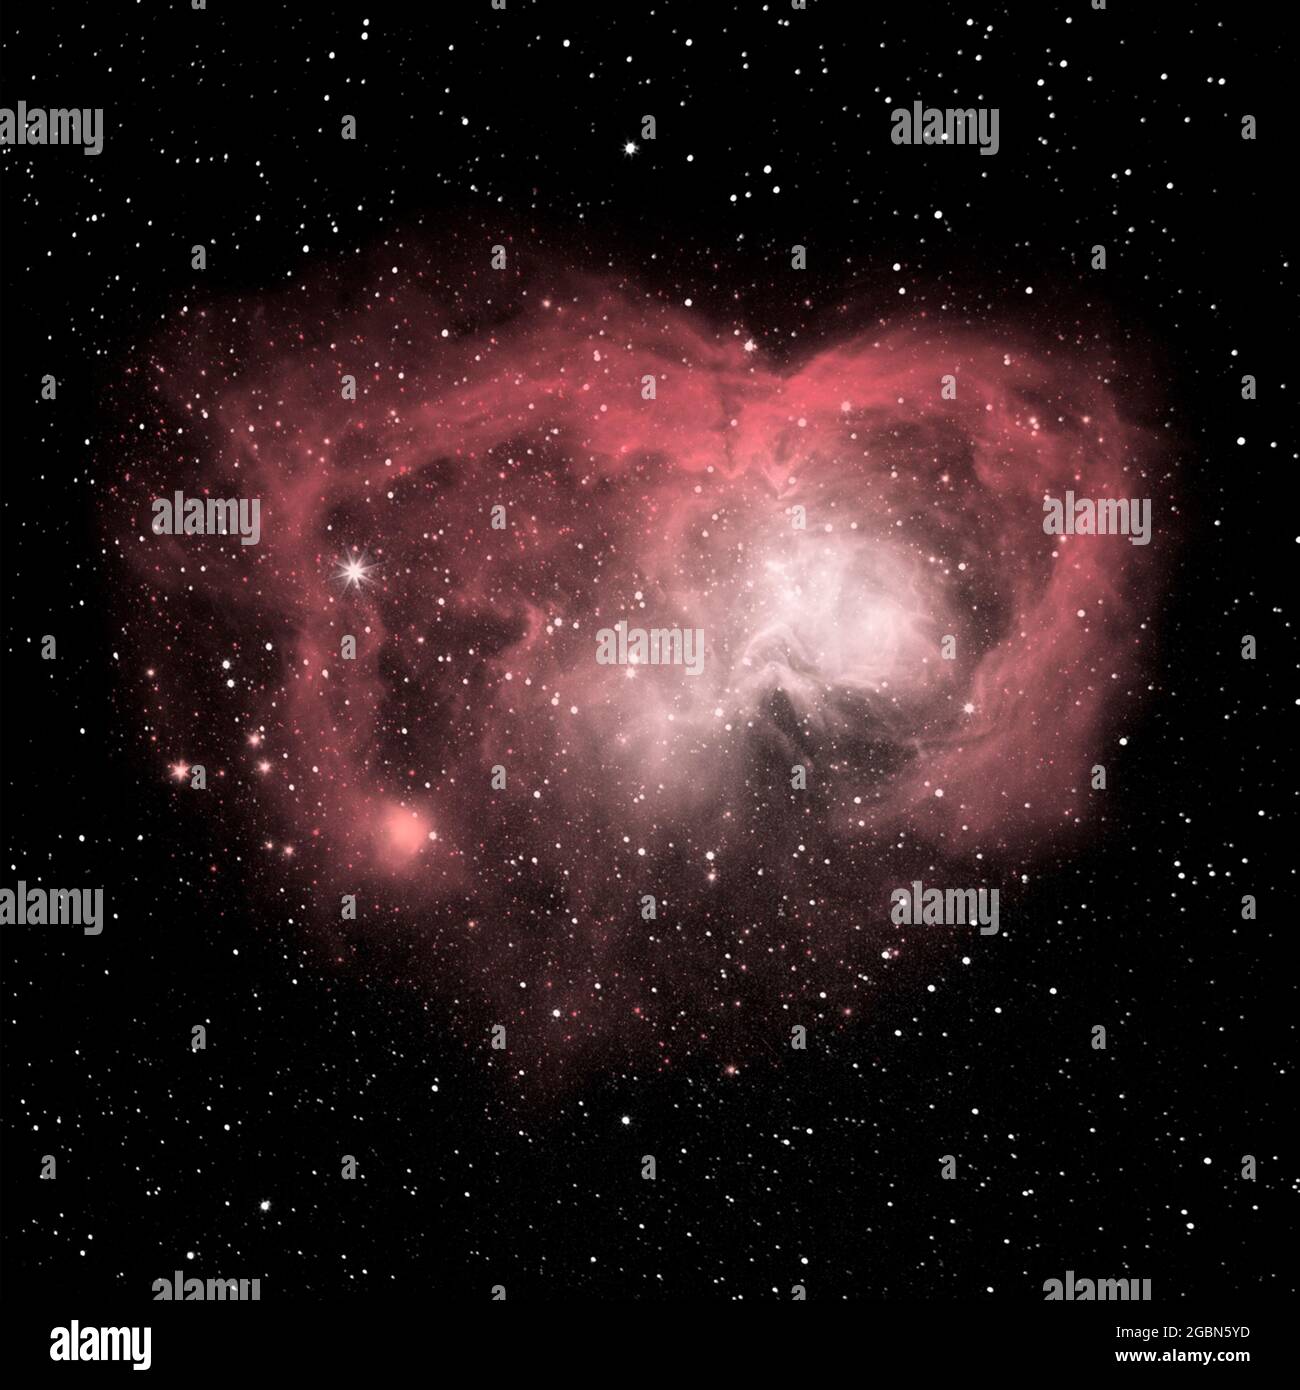 Corazón de estrellas de Nebulosa de Mariposa, una nebulosa planetaria bipolar en la constelación de Scorpius, una vasta extensión de gas caliente que se desprende de una estrella moribunda Foto de stock